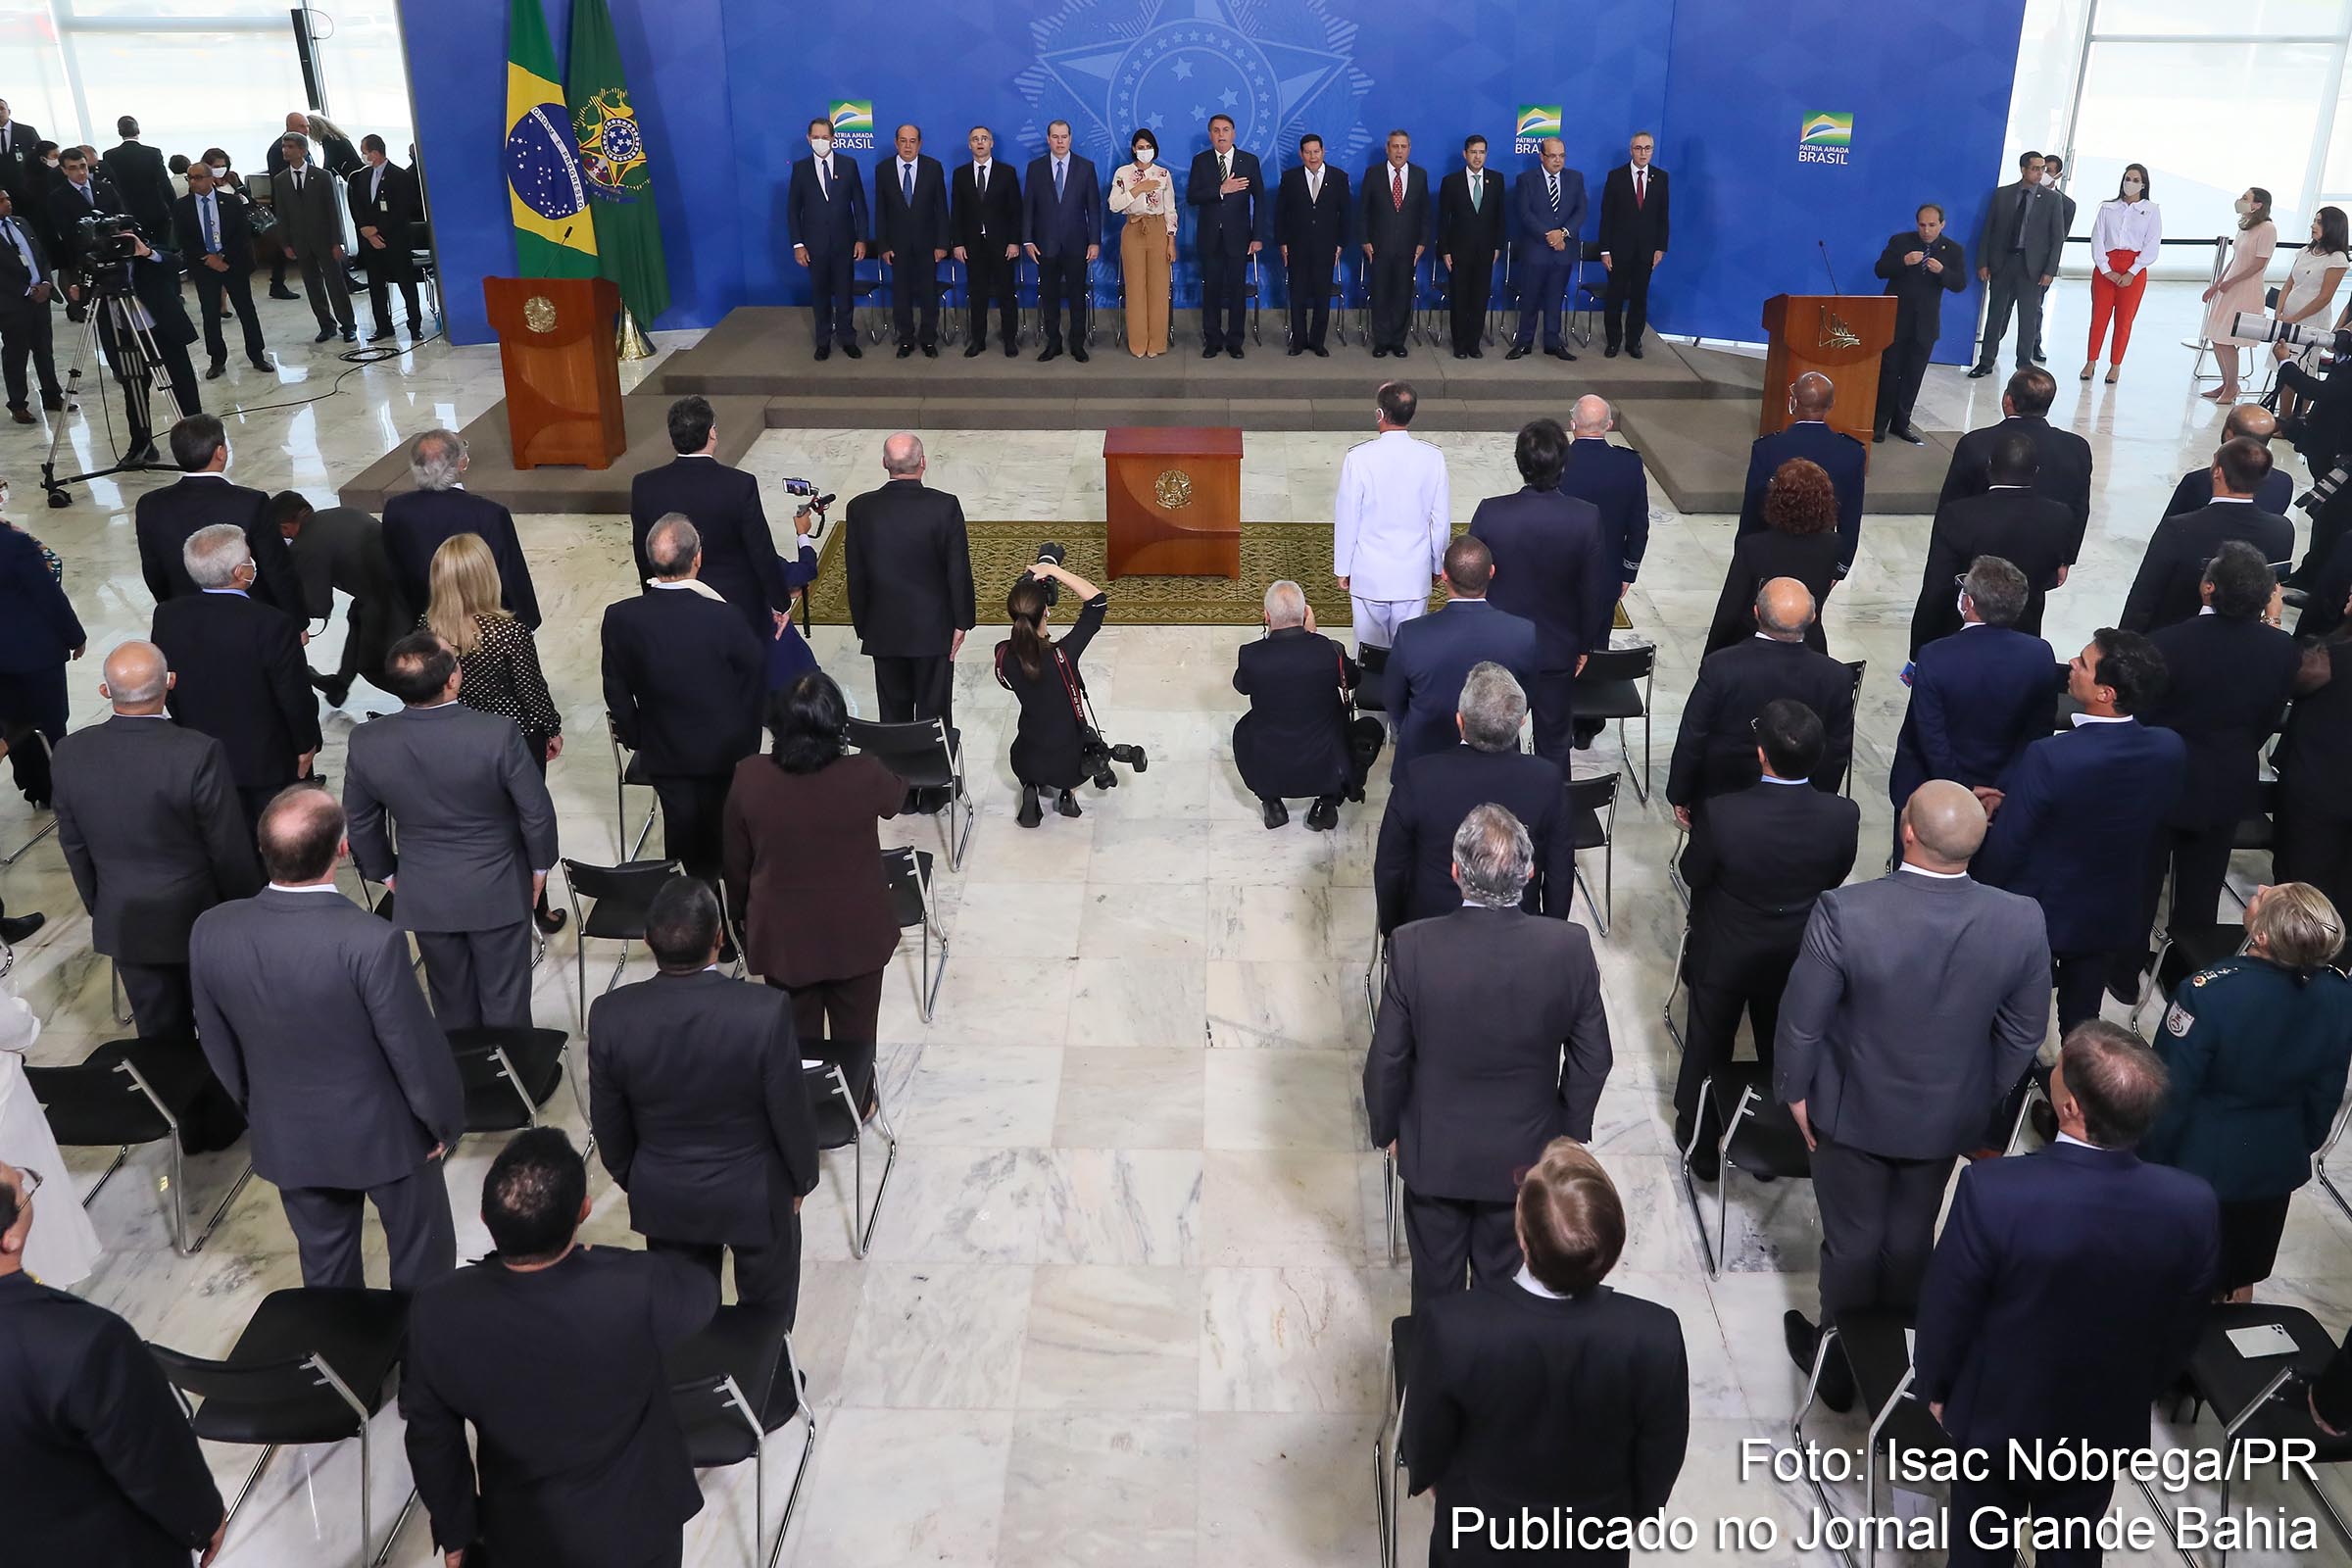 Solenidade de posse de André Mendonça como ministro da Justiça e Segurança Pública do Governo Bolsonaro, ocorrida em 29 de abril de 2020.